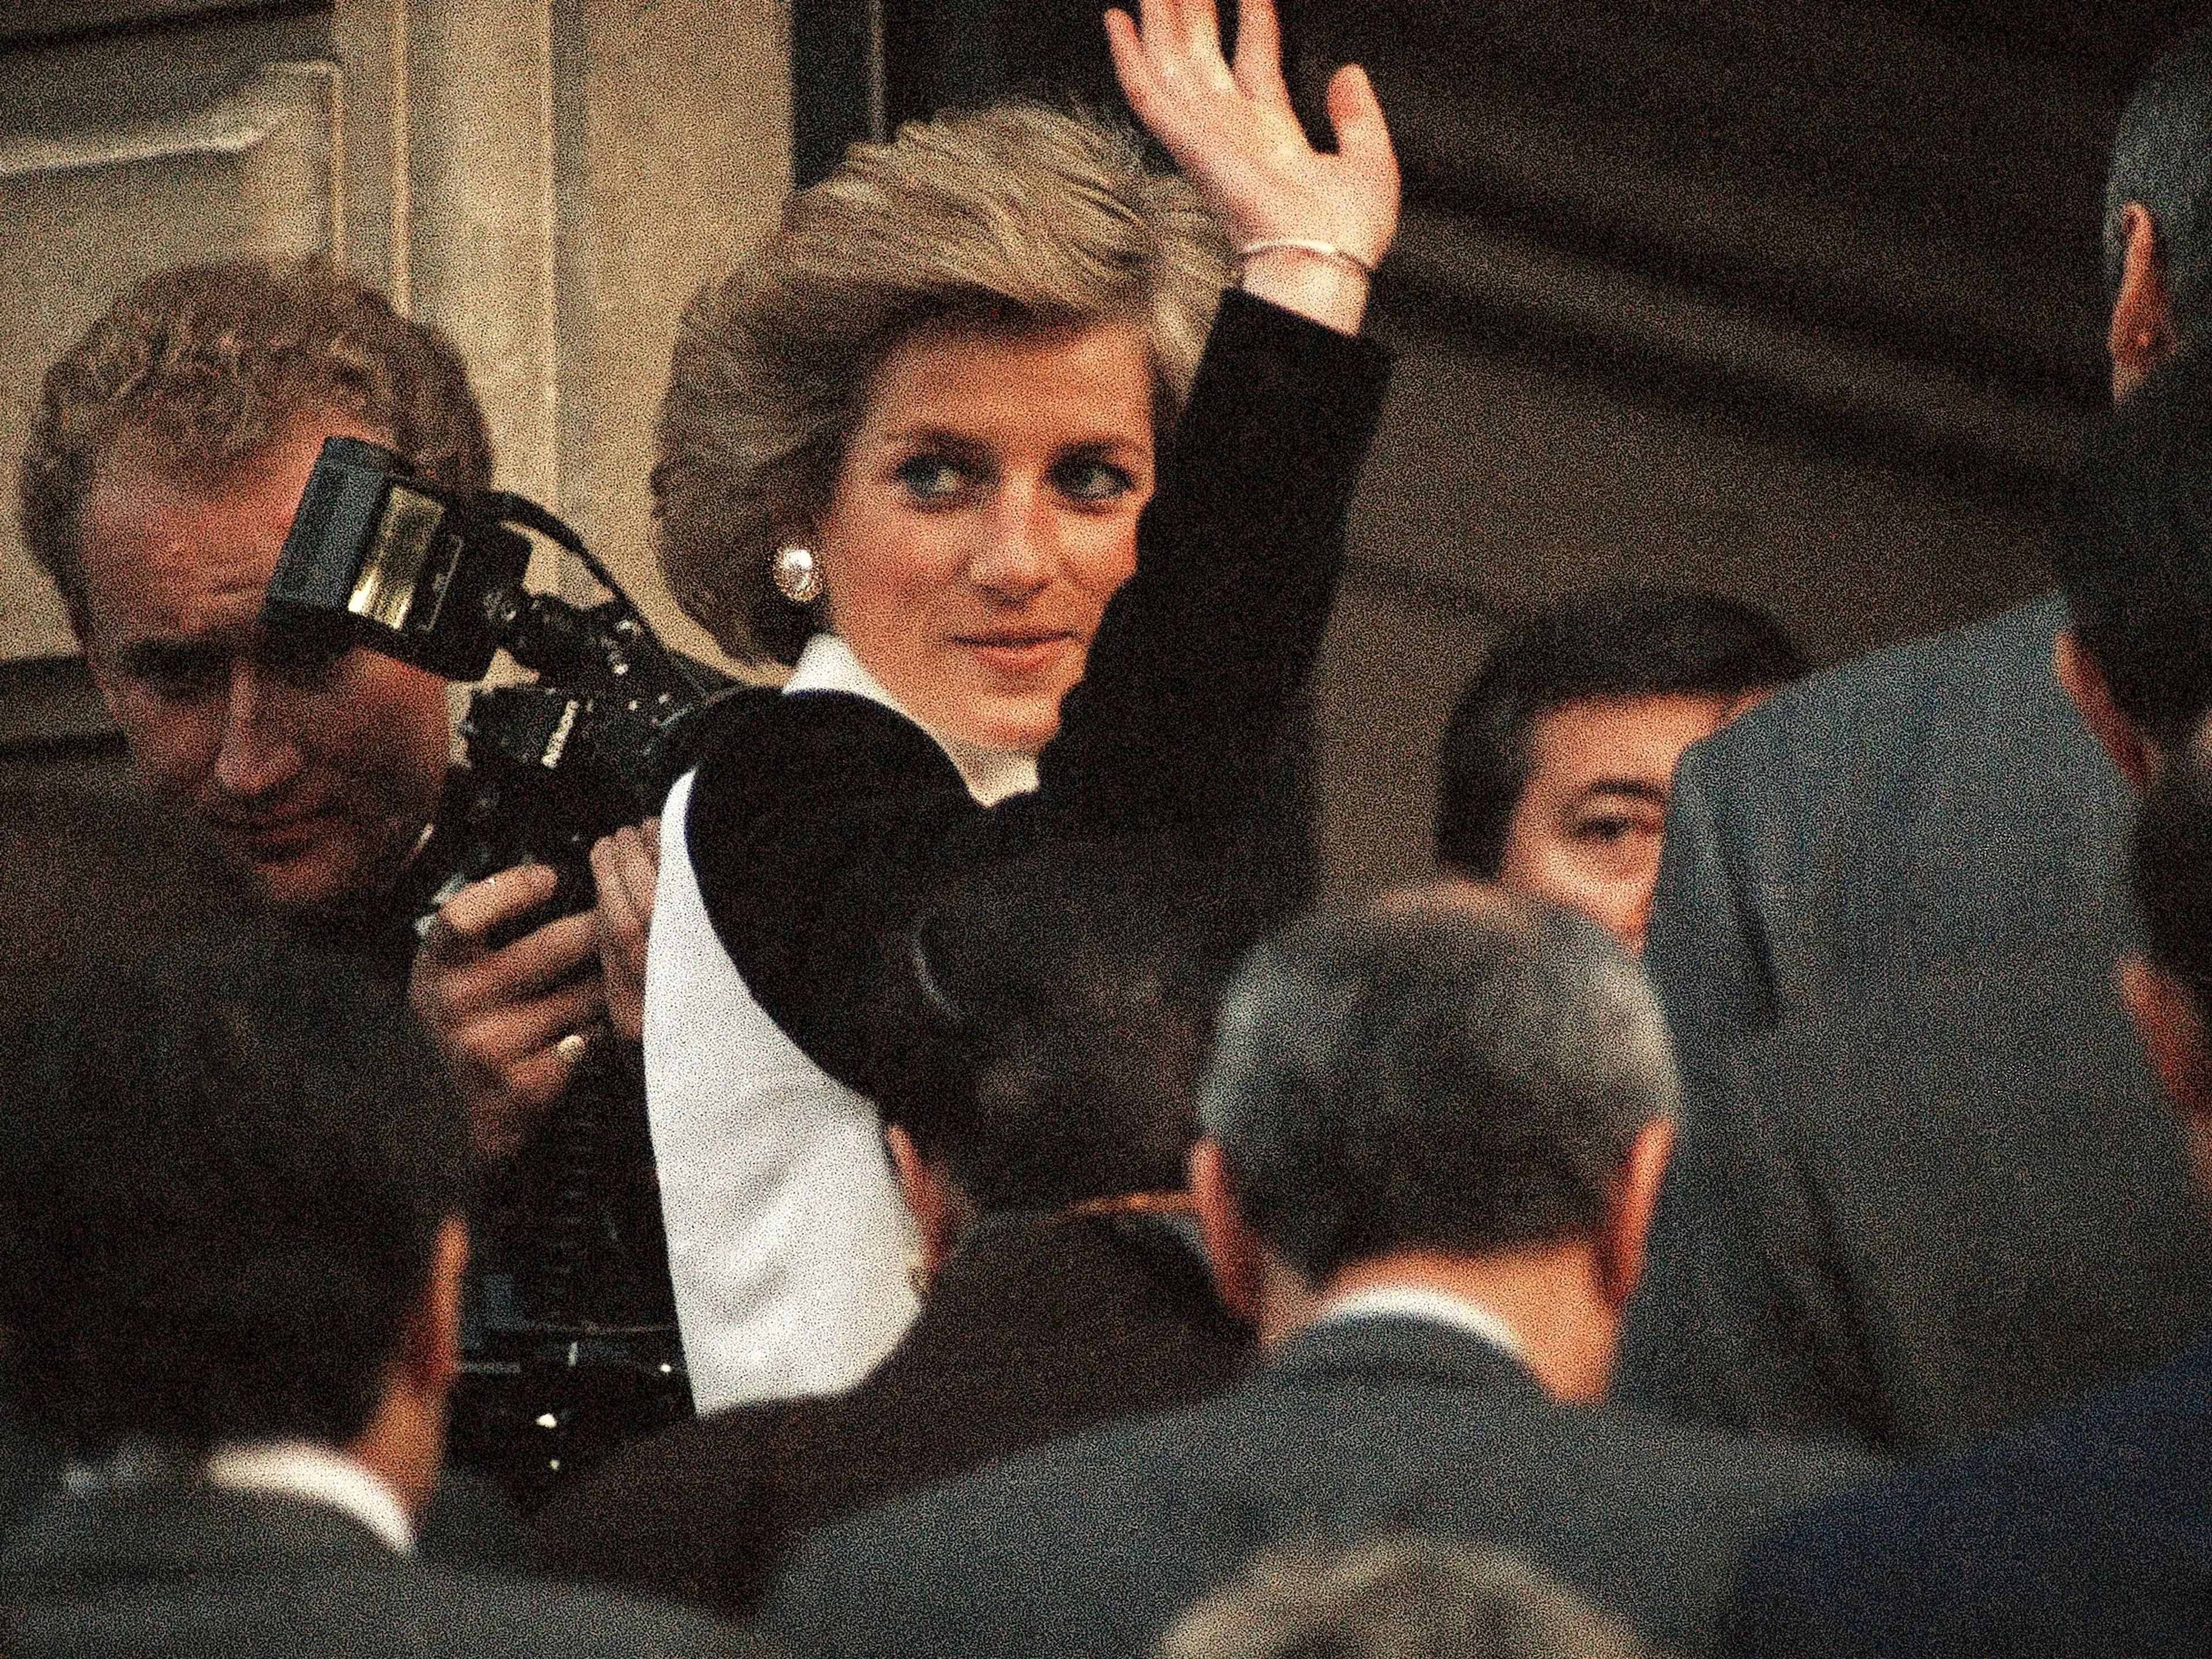 La princesa Diana saludando a los fotógrafos. / Asociated Press.